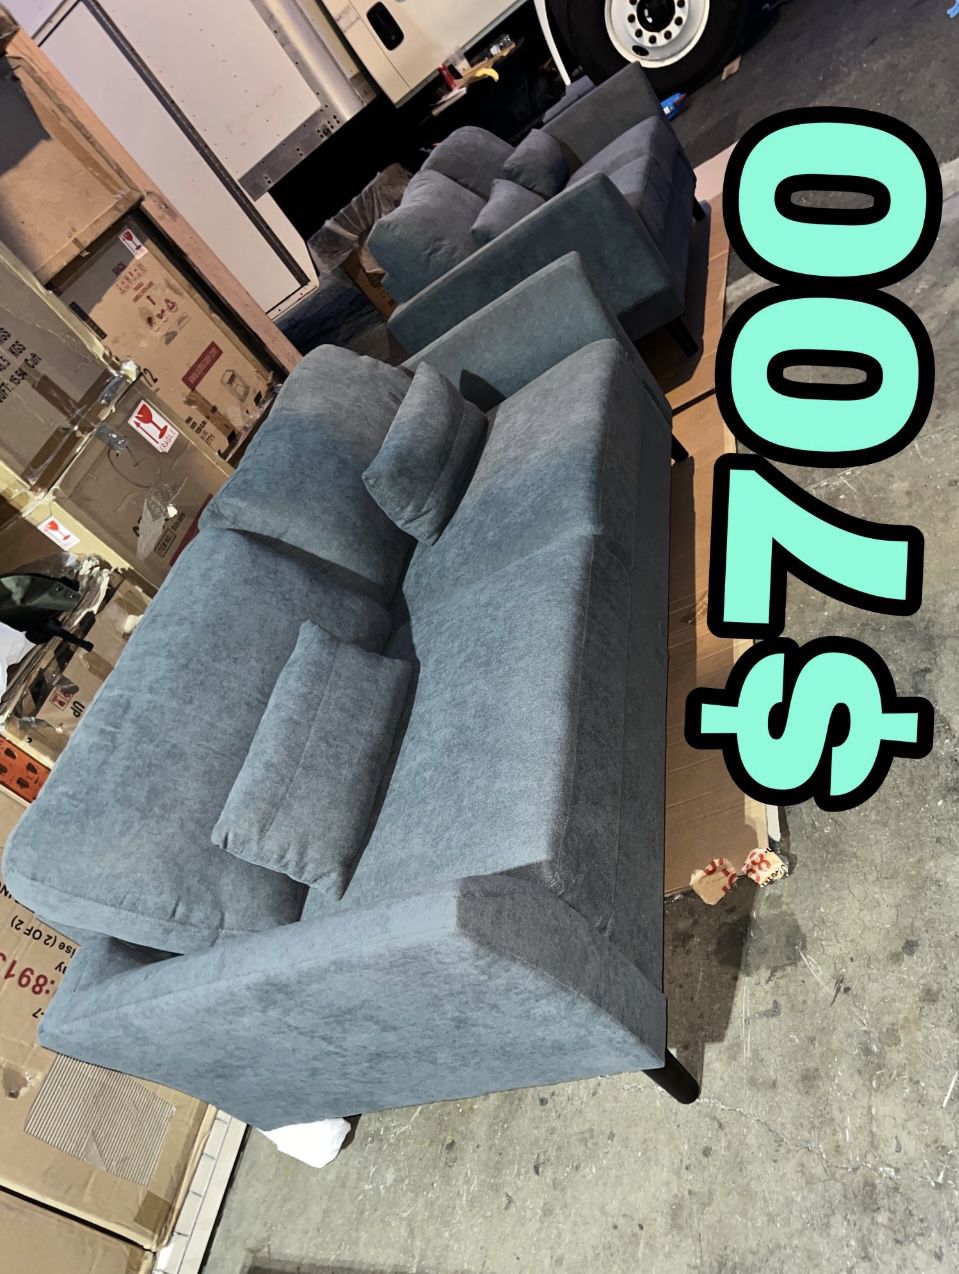 Beautiful New 2PC Sofa Set(1 Sofa & 1 Loveseat) in Gray Velvet Only $700!!!